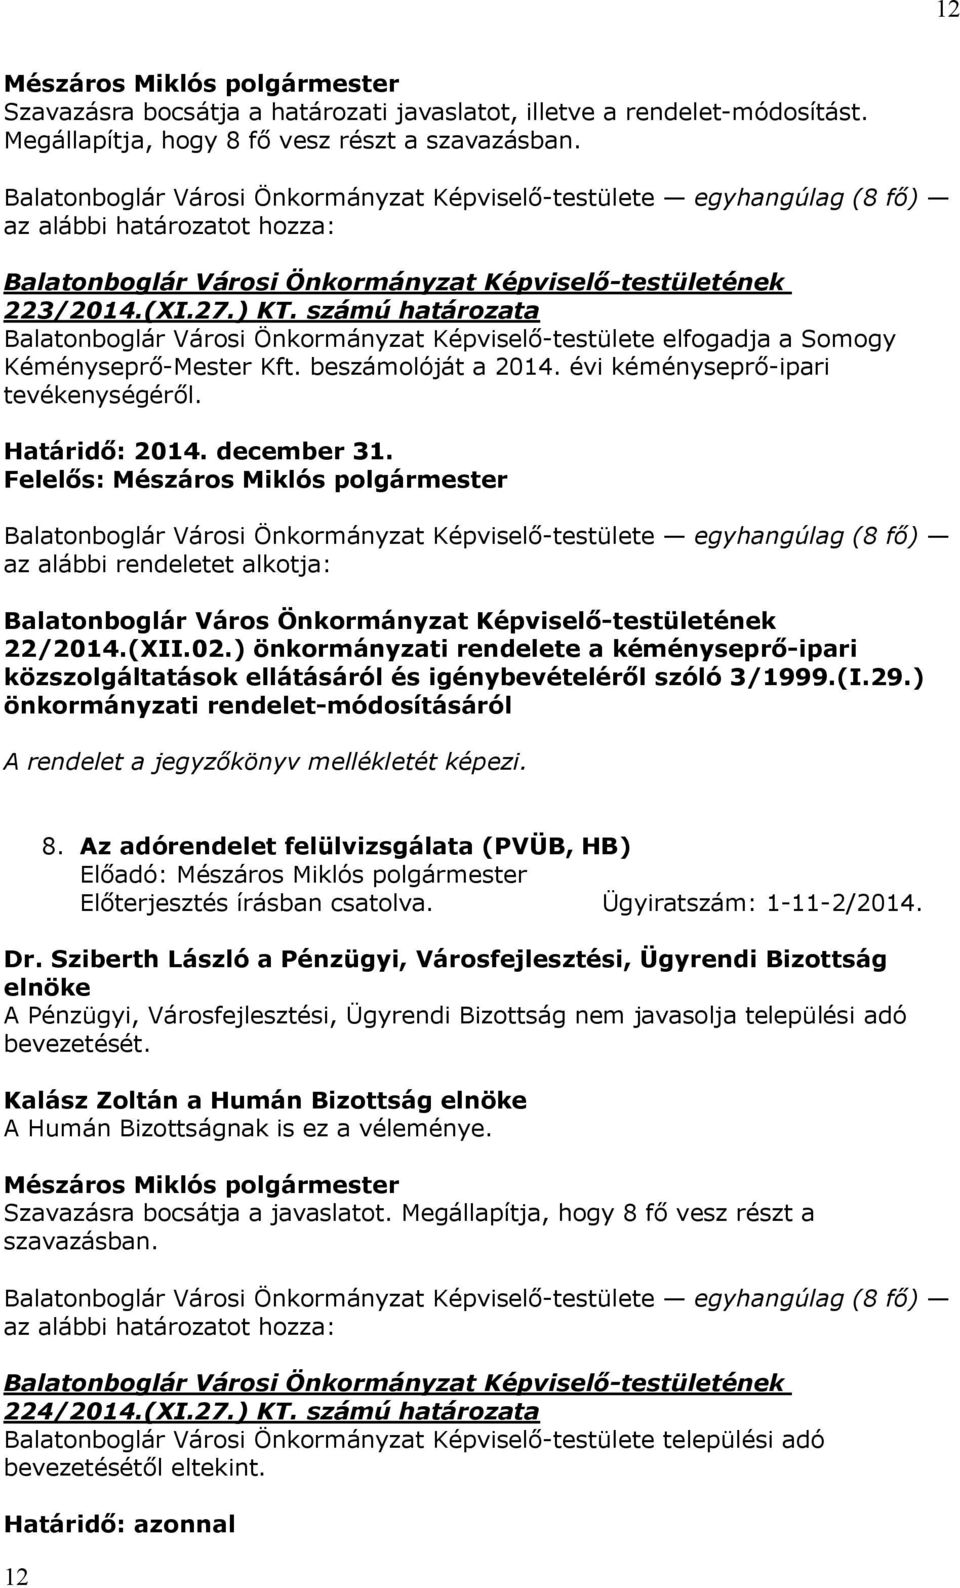 december 31. Felelős: az alábbi rendeletet alkotja: Balatonboglár Város Önkormányzat Képviselő-testületének 22/2014.(XII.02.